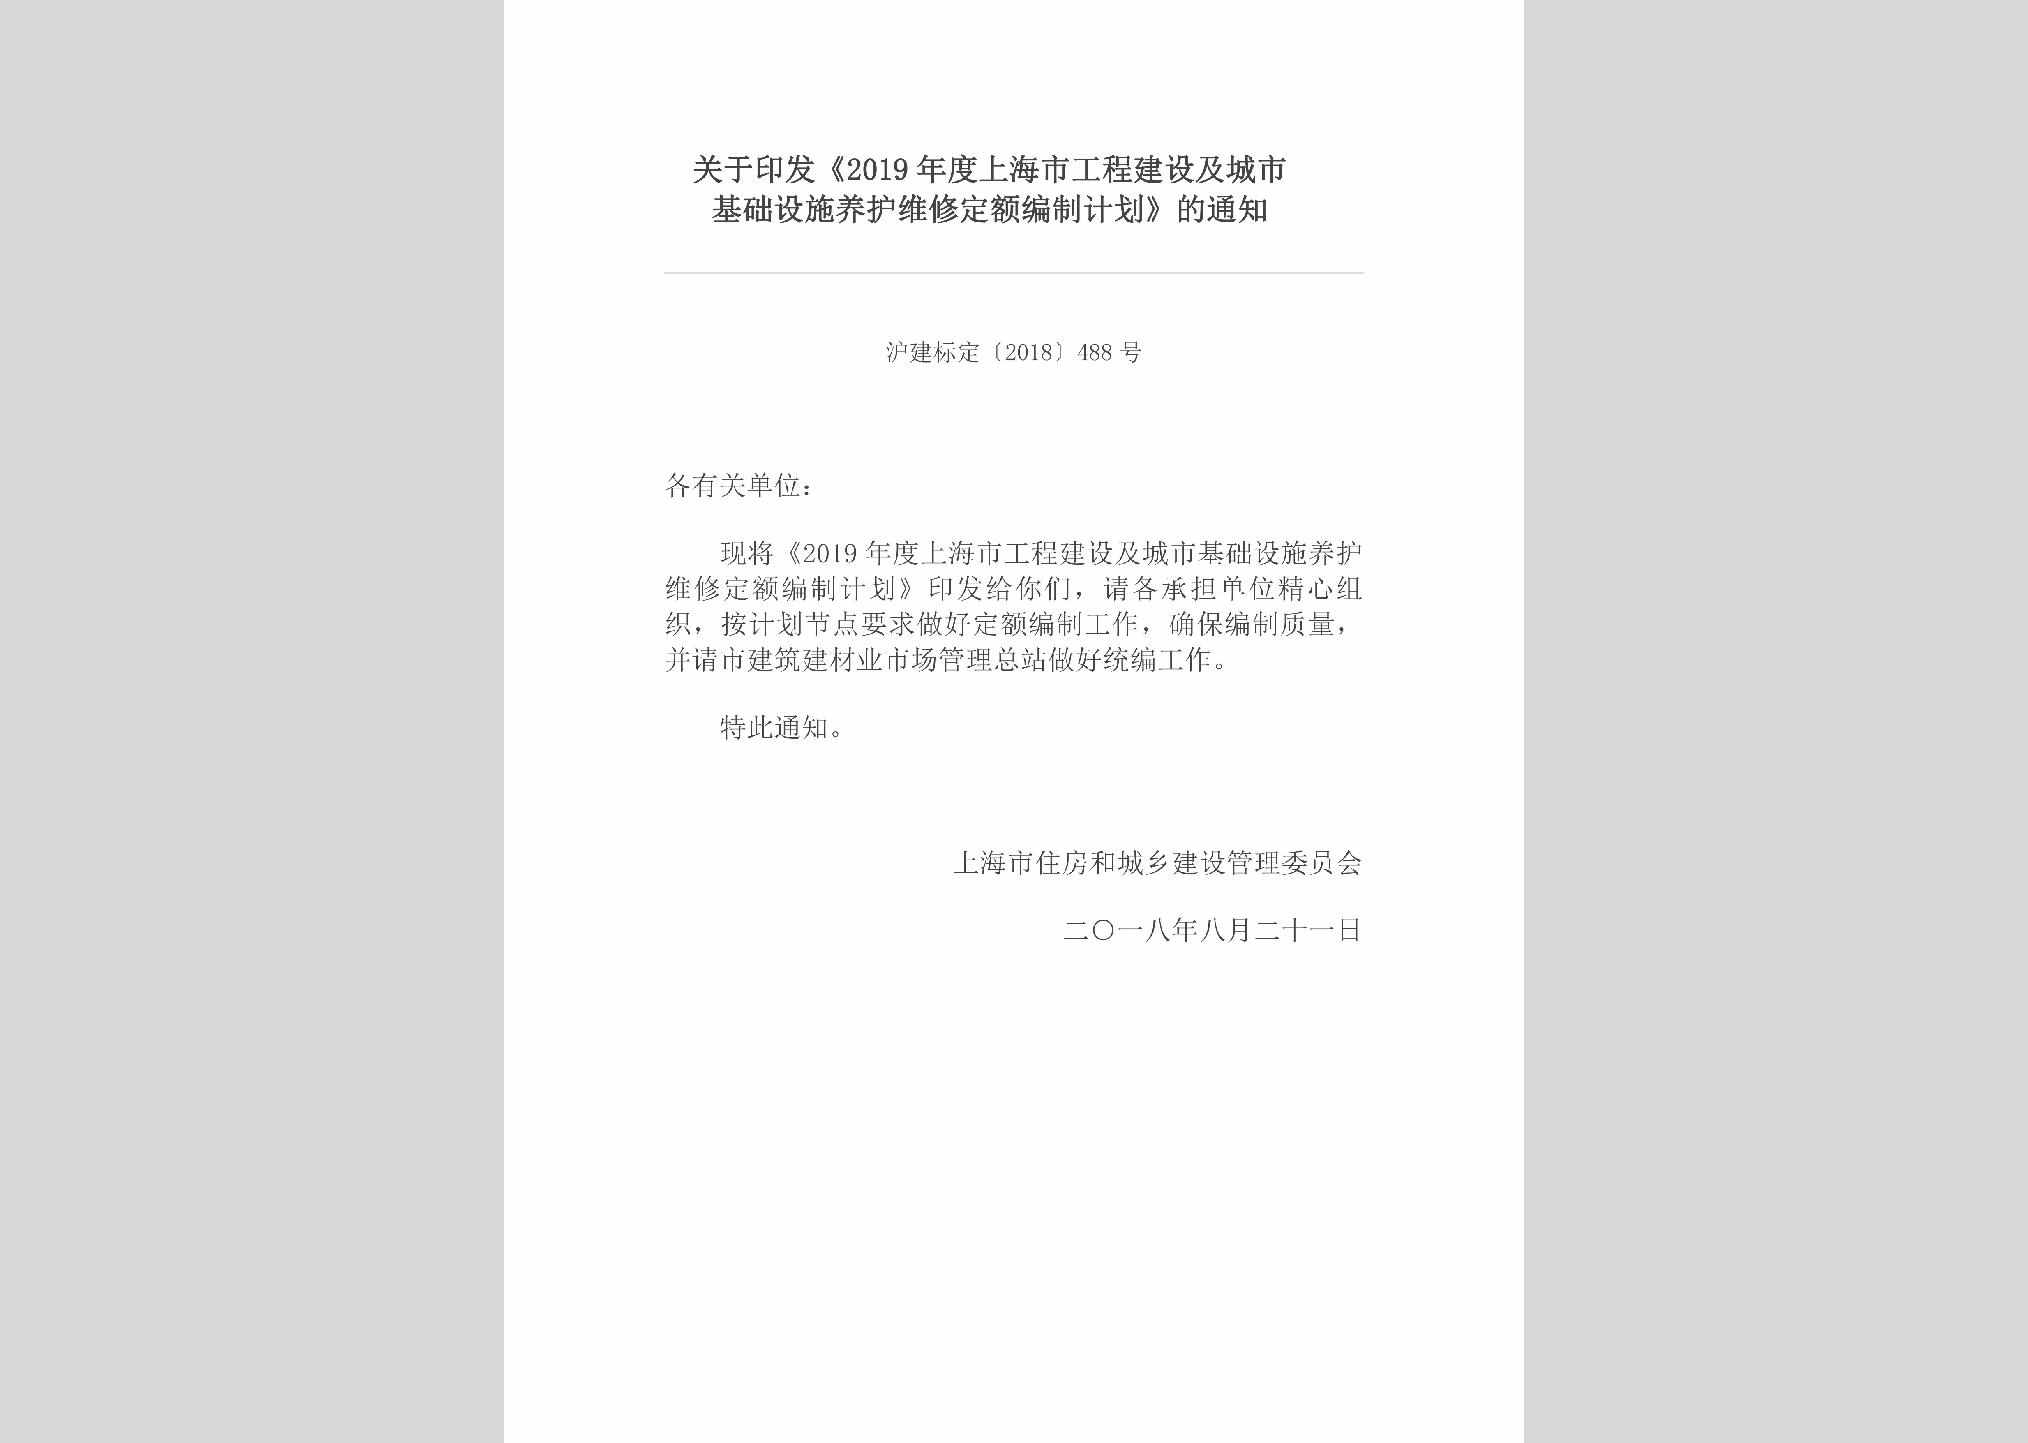 沪建标定[2018]488号：关于印发《2019年度上海市工程建设及城市基础设施养护维修定额编制计划》的通知